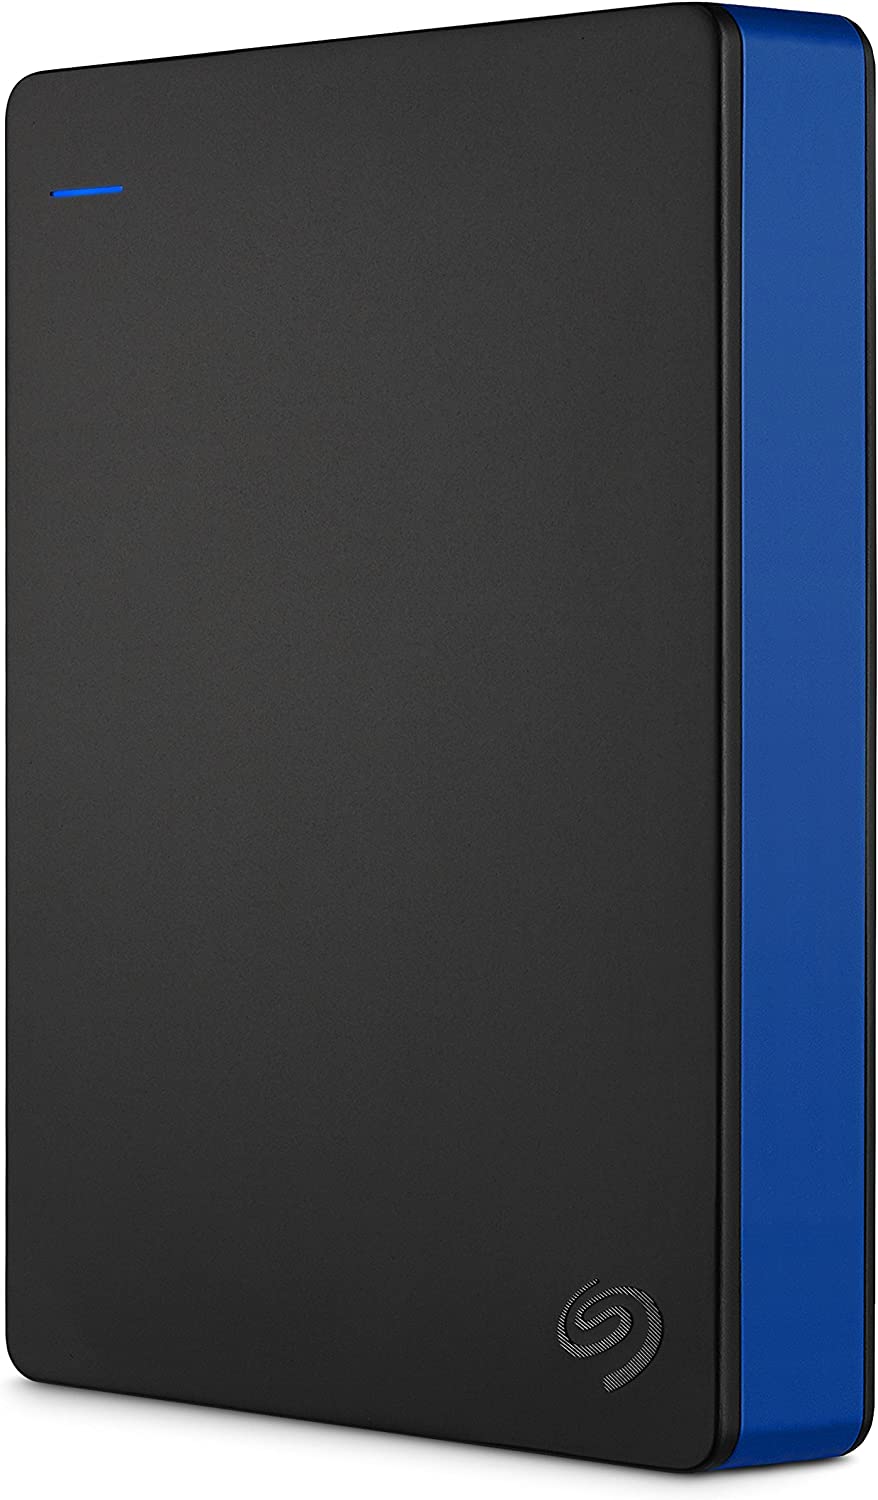 SEAGATE - Disque Dur Externe Gaming Playstation PS4 - 4To - USB 3.0 - Noir  et bleu - La Poste